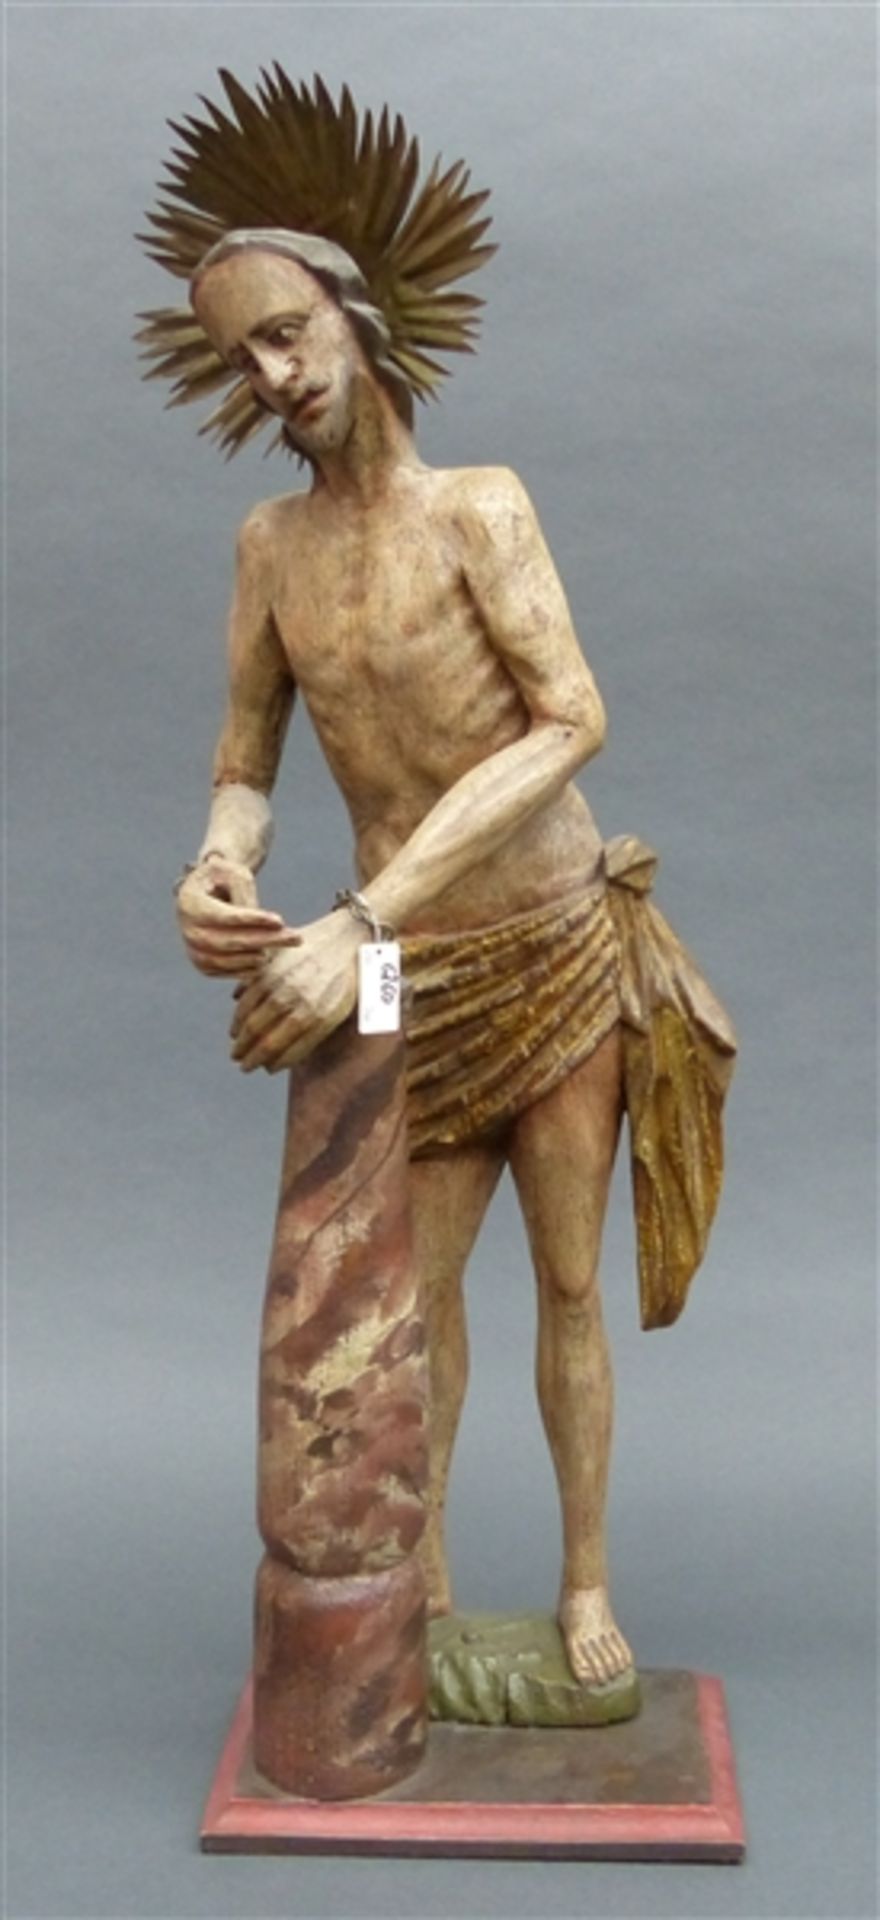 Holzskulptur, um 1900 geschnitzt, bemalt, "Geißelchristus", h 66 cm,